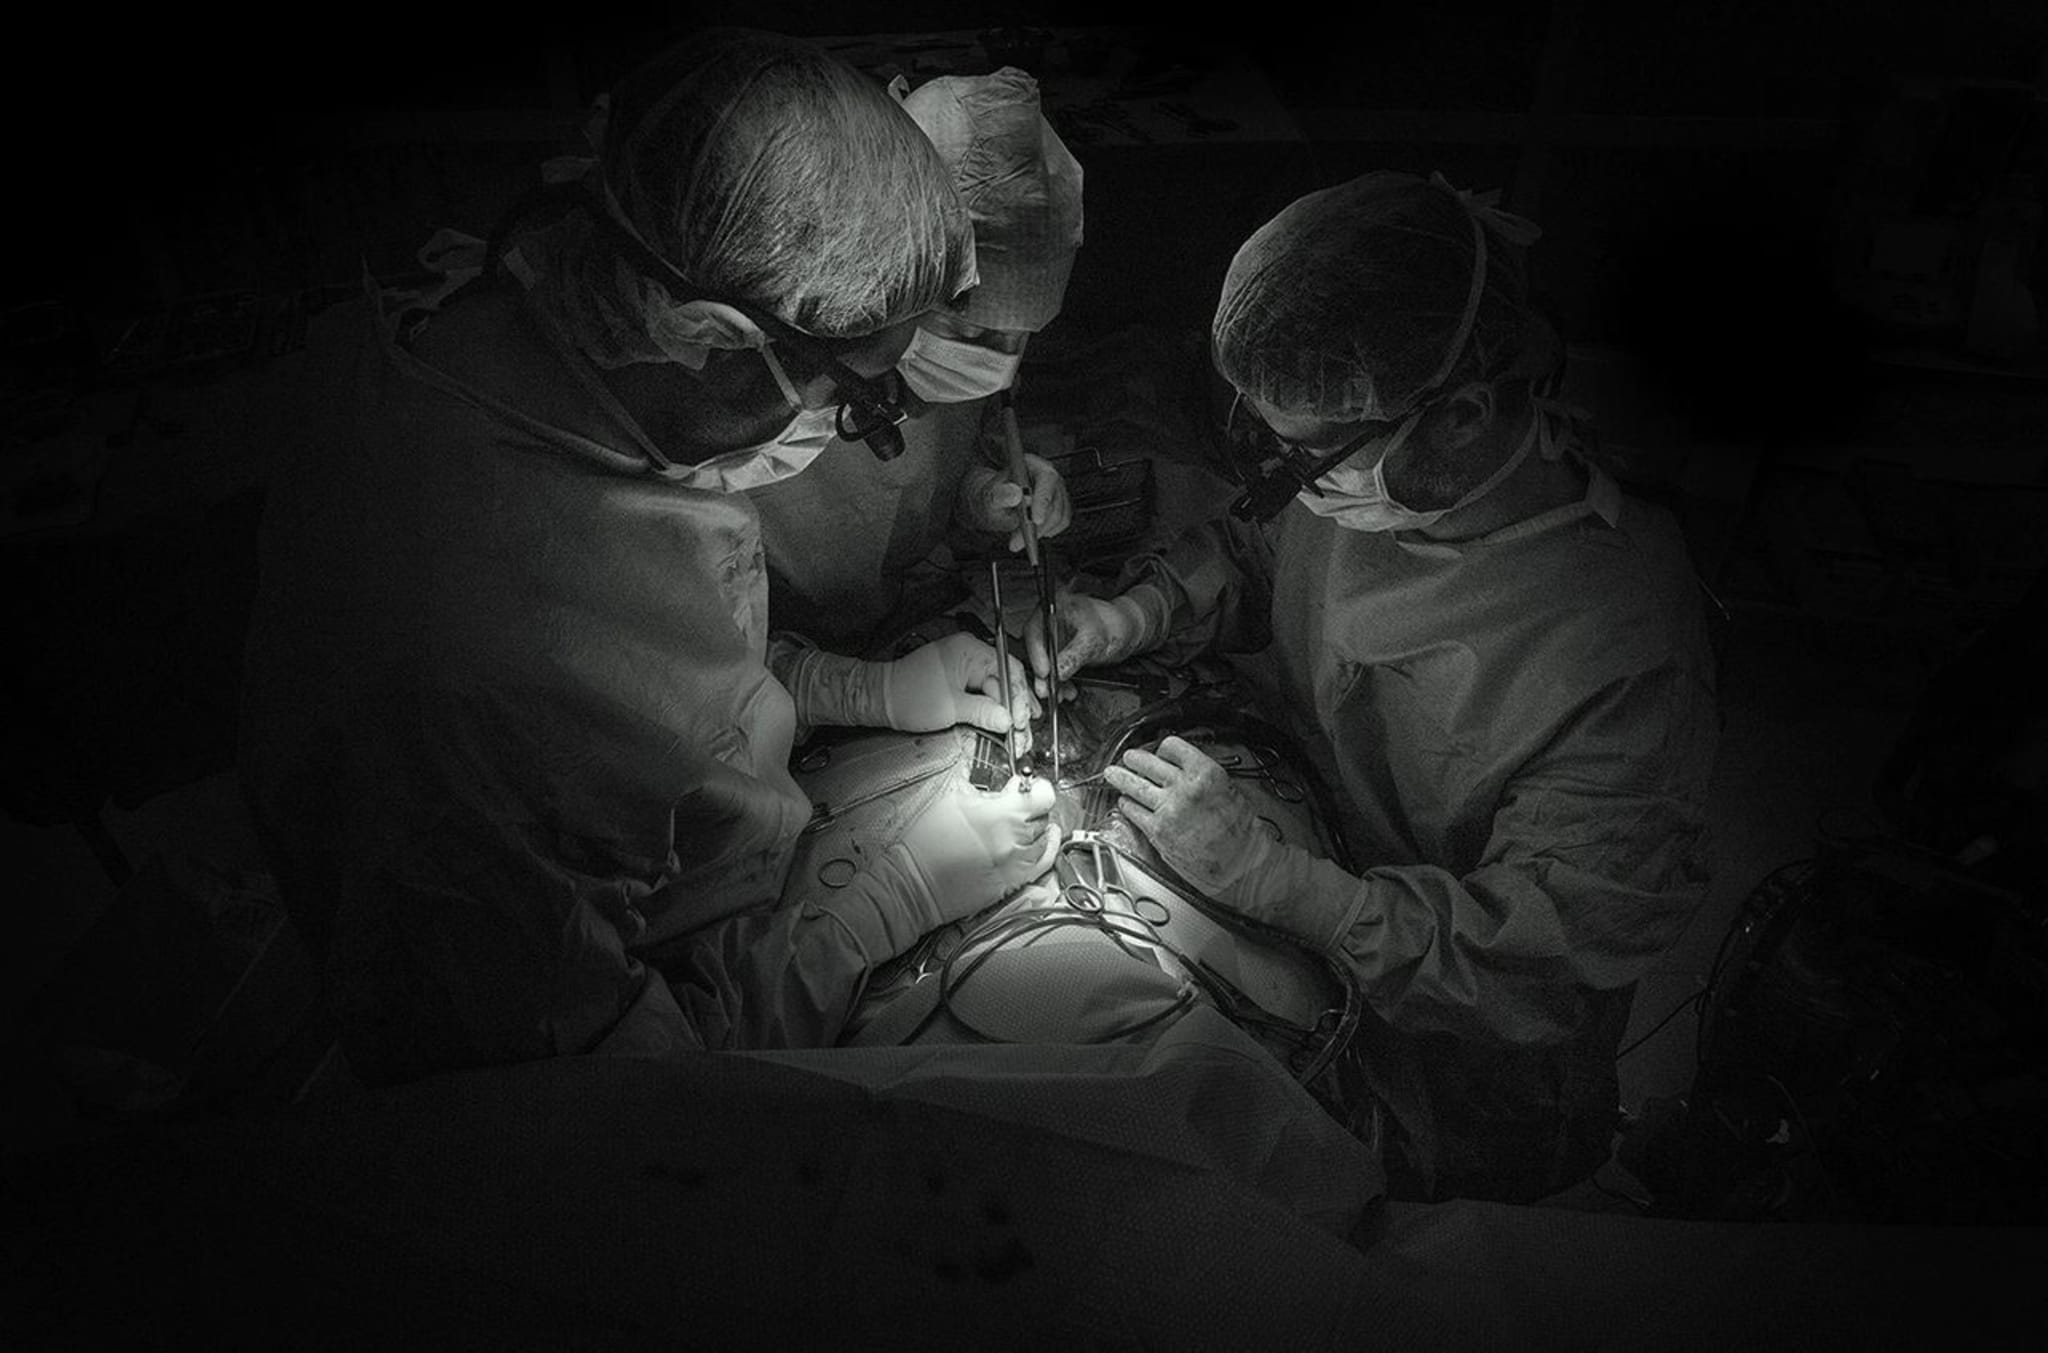 Nähen eines Koronargefäßes während einer Bypass-Operation.